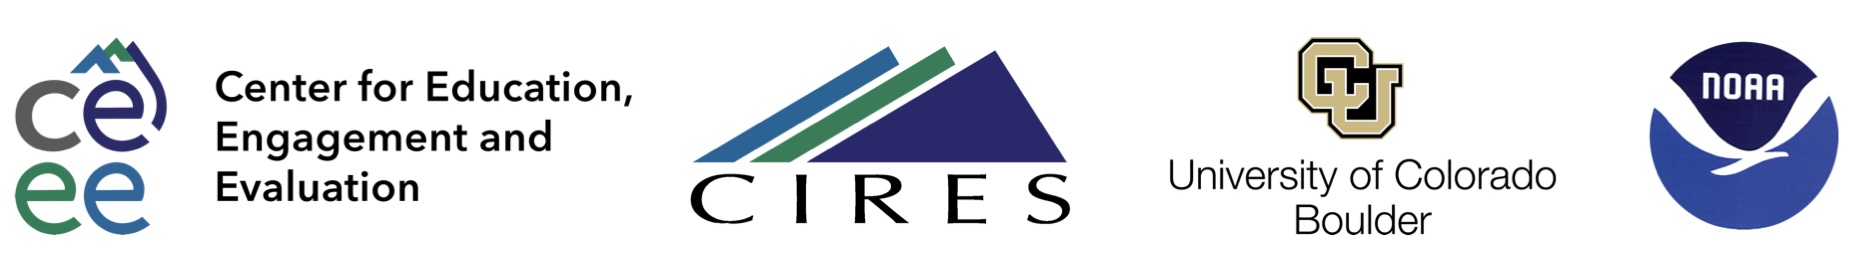 CIRES, CU BOULDER, NOAA Logos